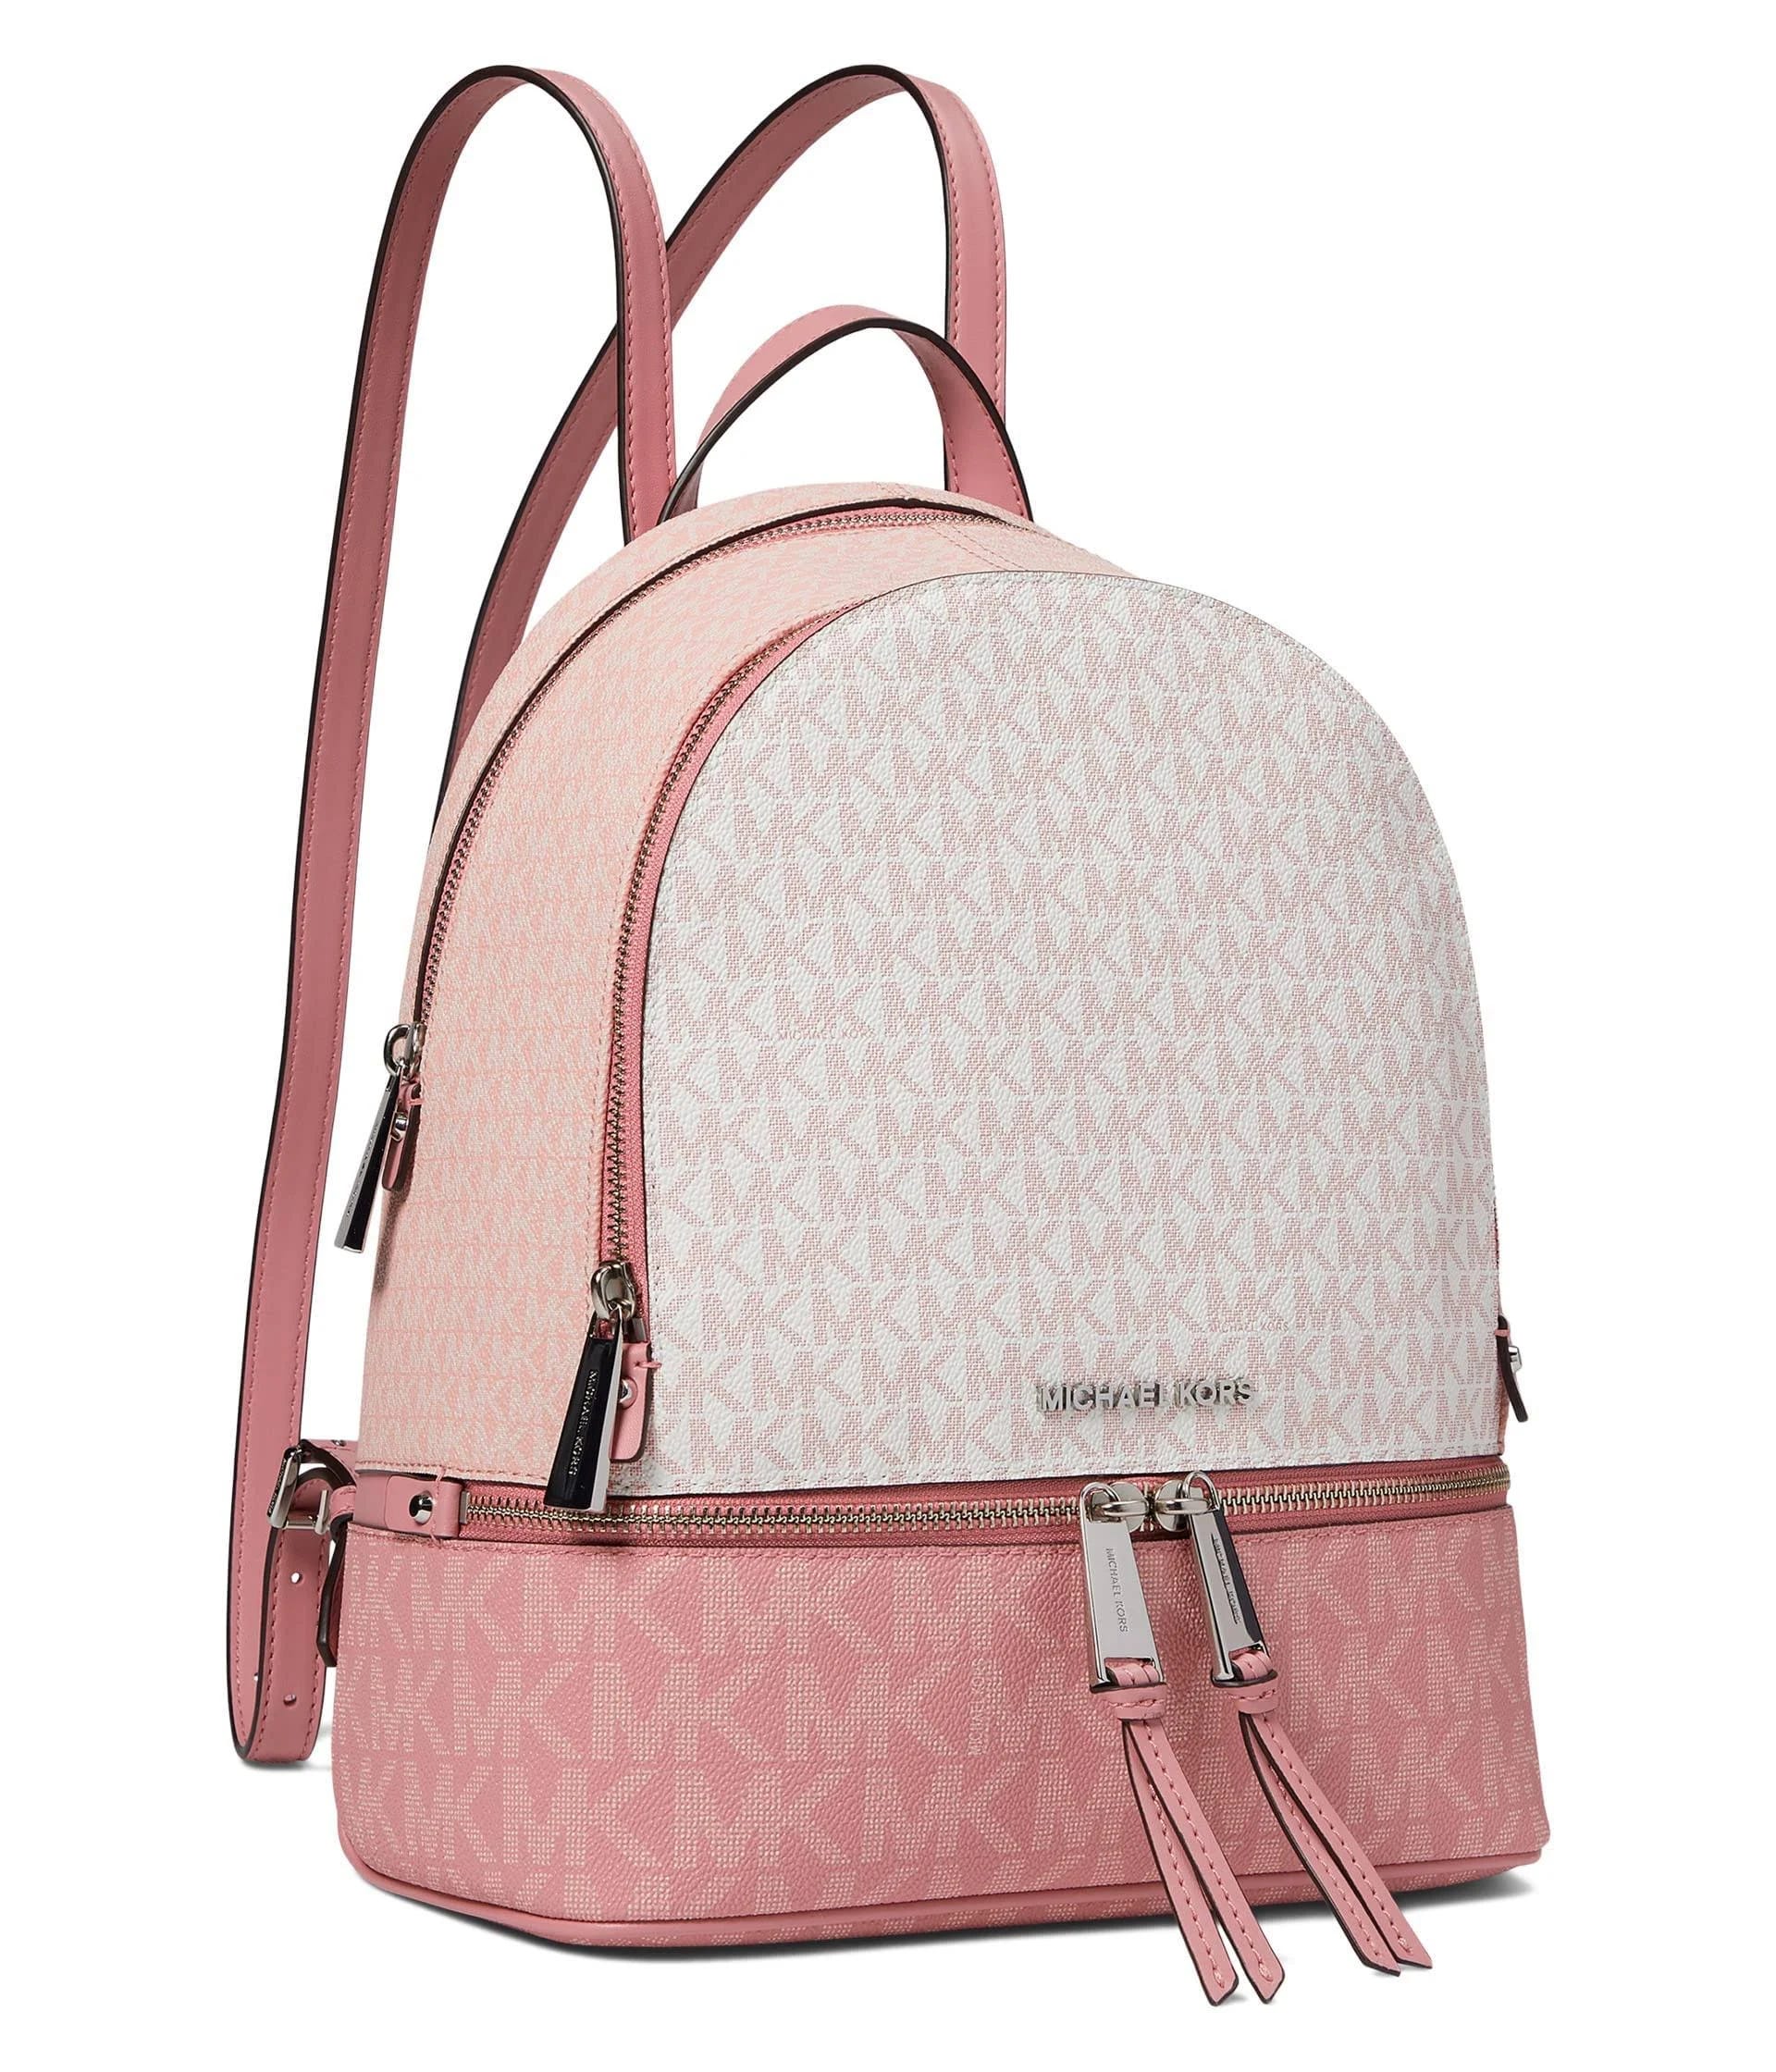 Michael Kors Rhea Zip Medium Backpack in Primrose Color | Image